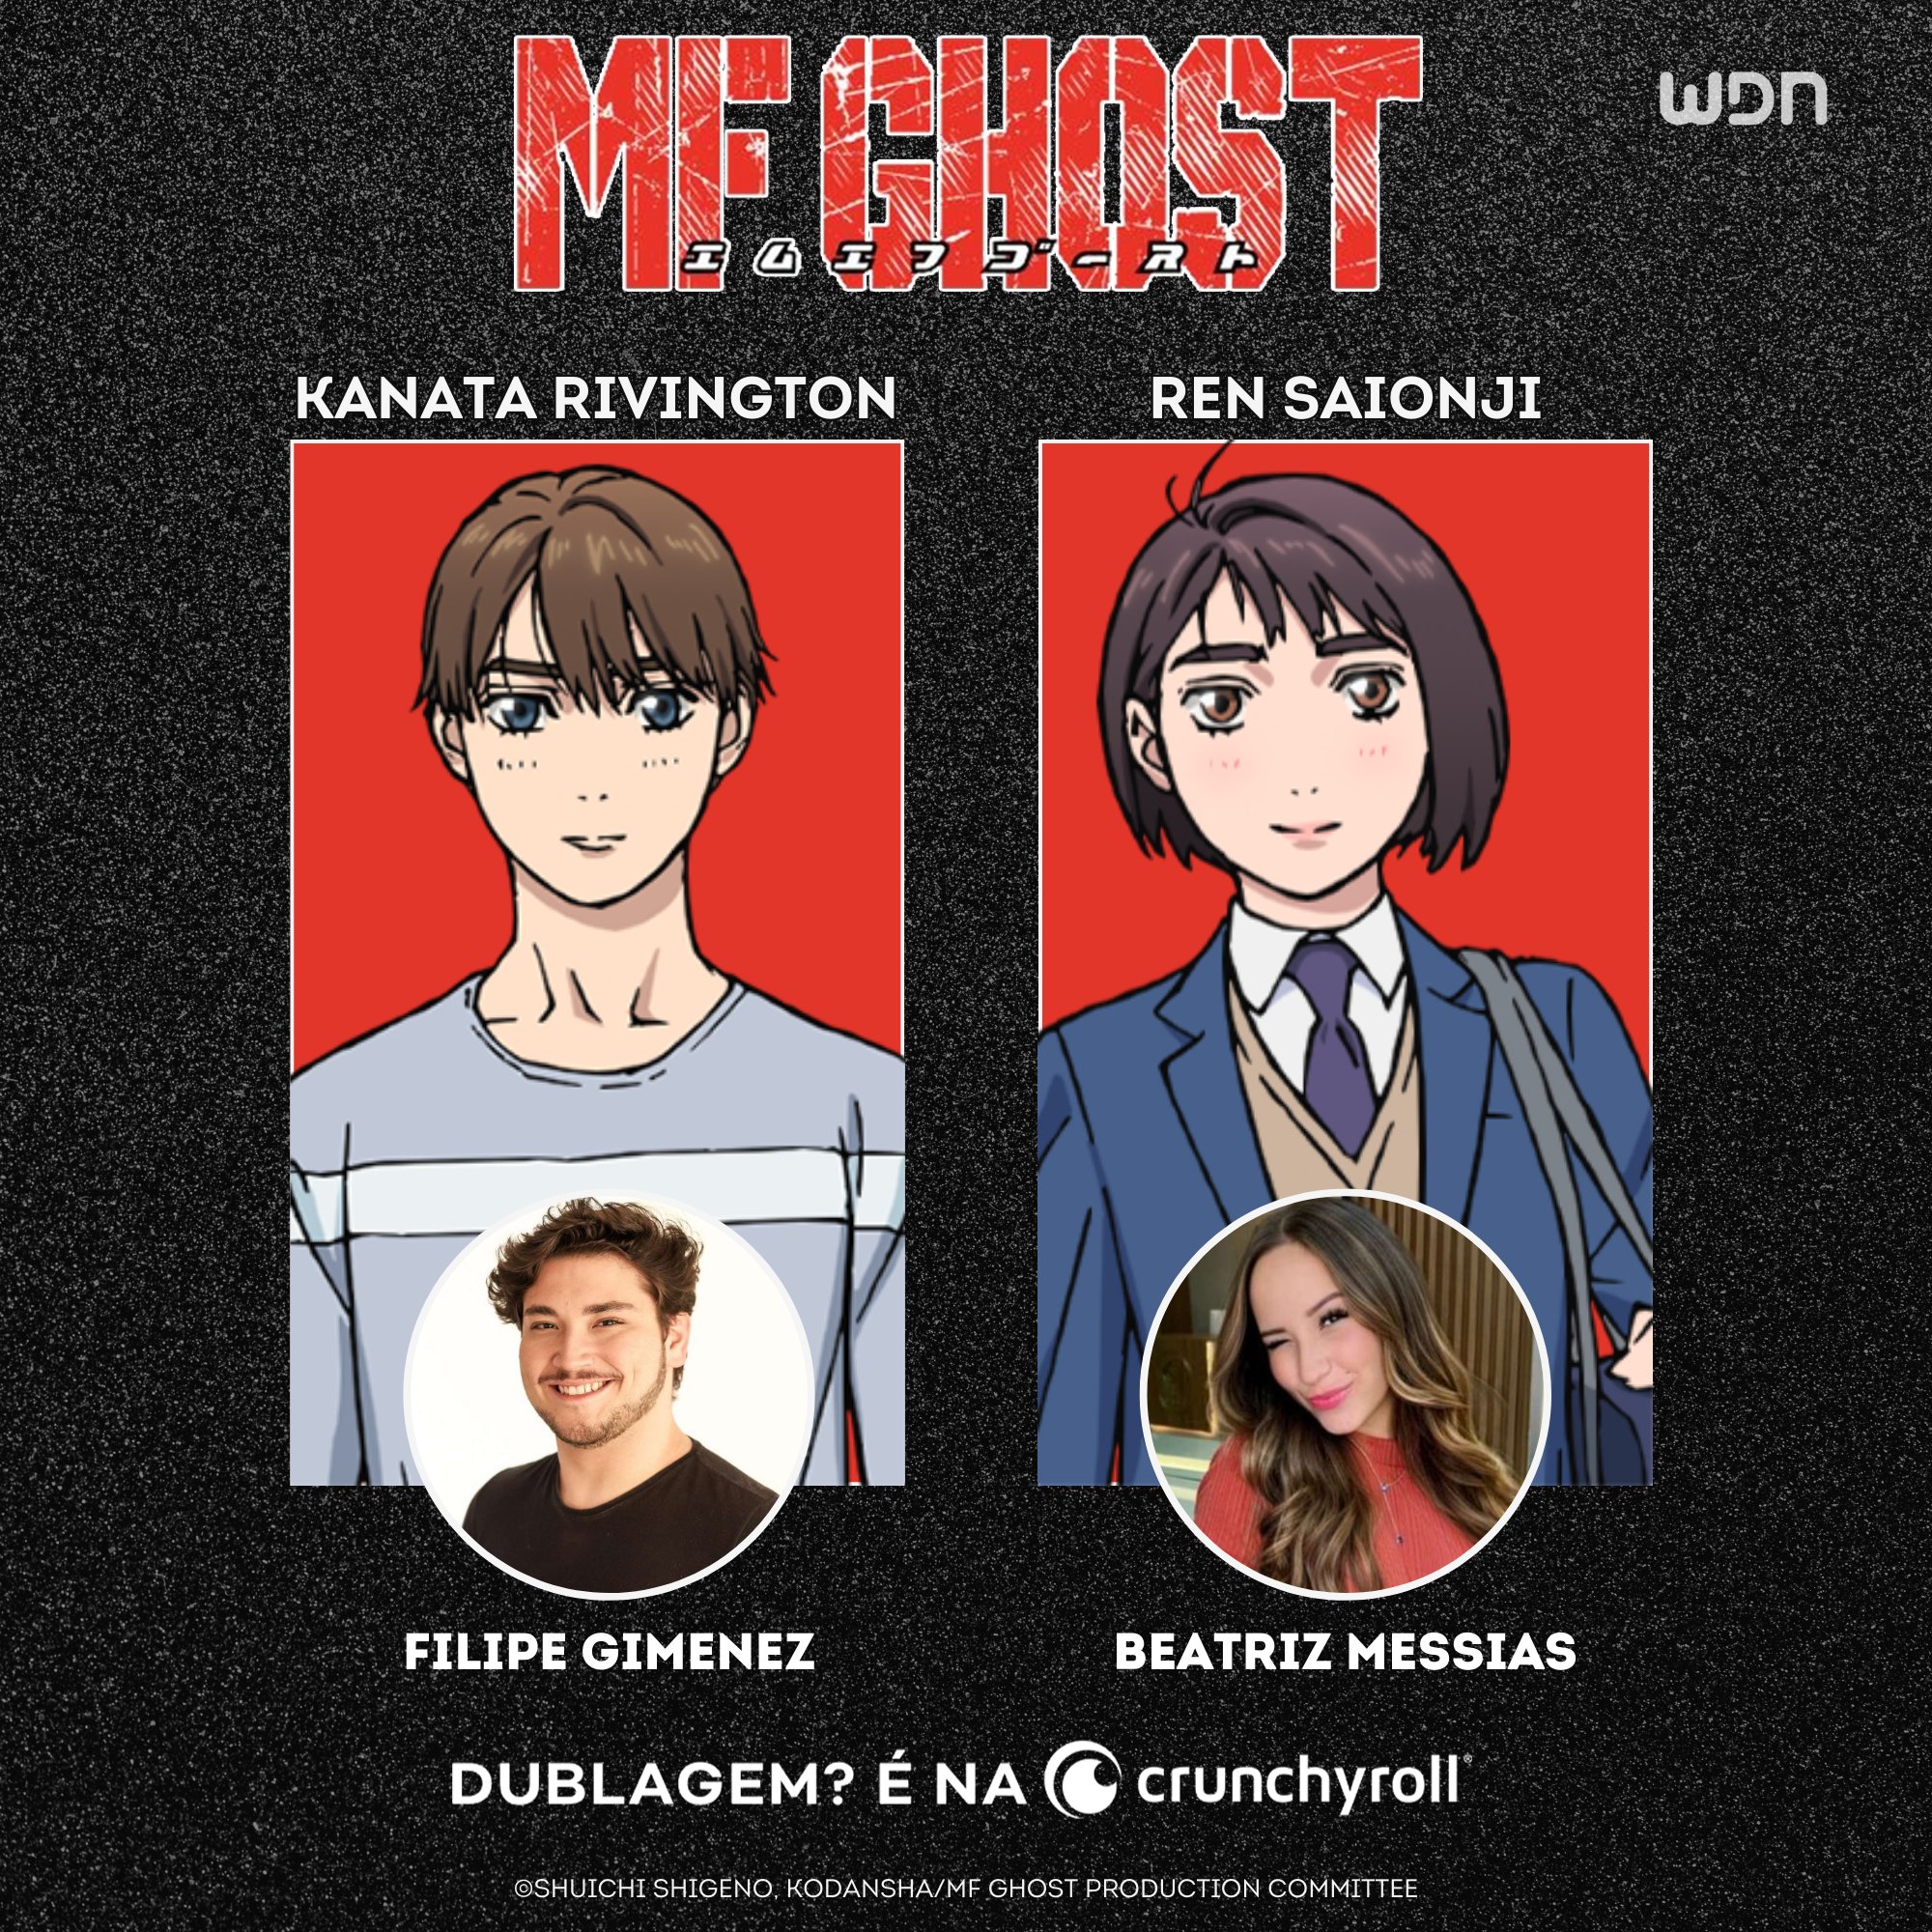  Crunchyroll estreia dublagem de MF Ghost